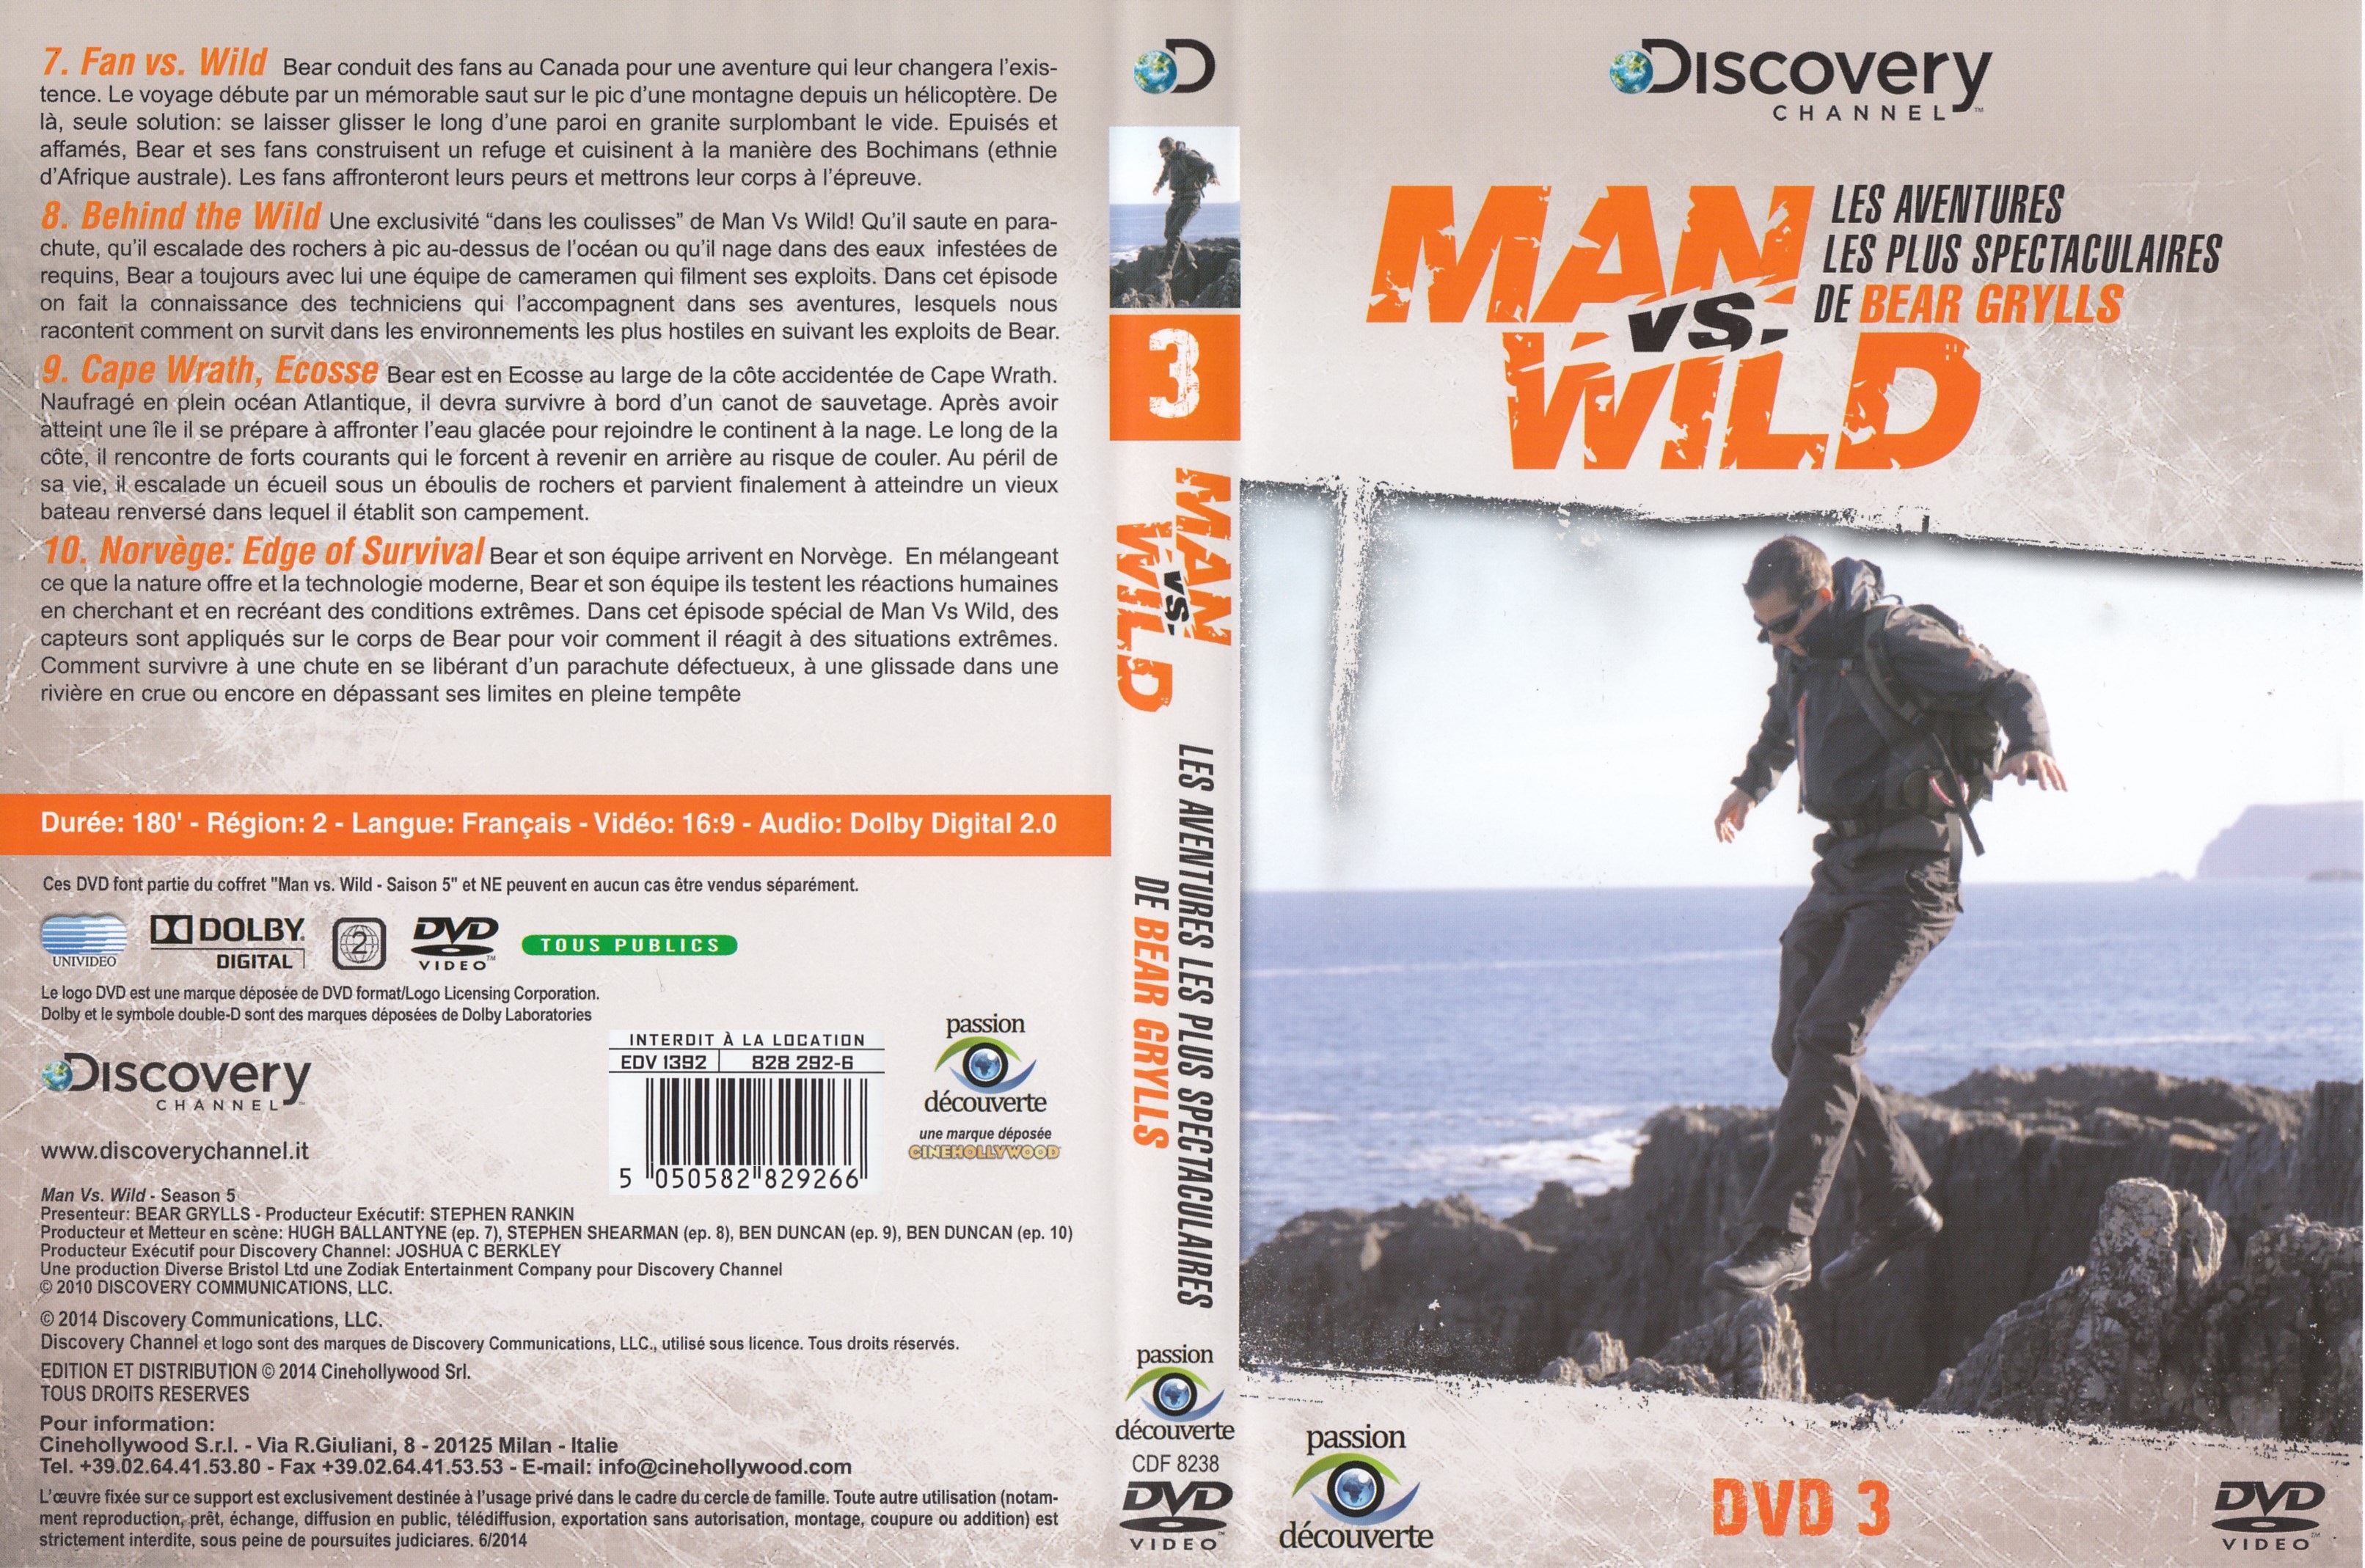 Jaquette DVD Man vs wild - Les aventures les plus spectaculaires de Bear Grylls DVD 3